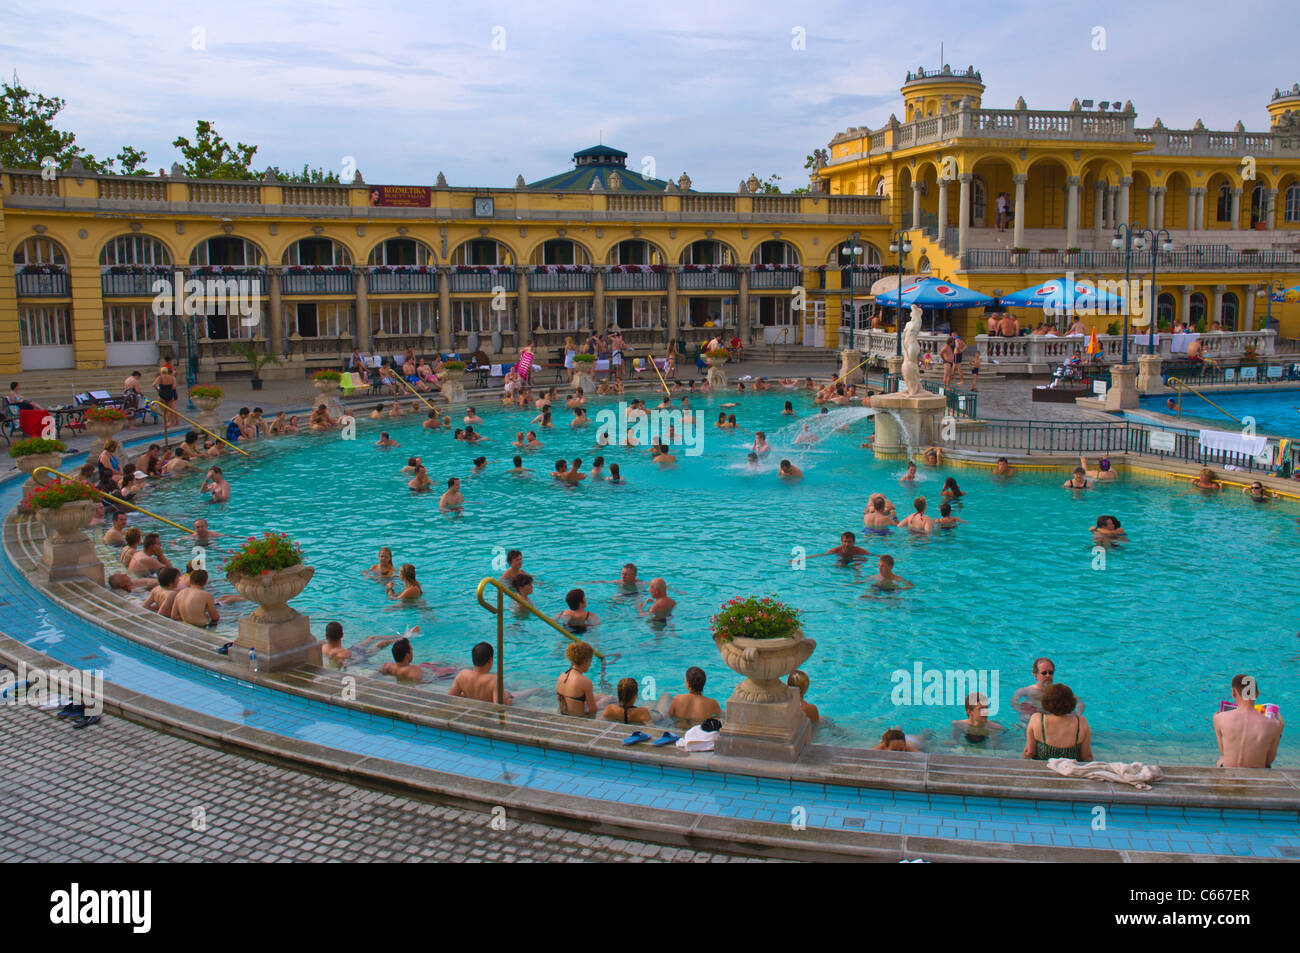 L'Aquincum Szechenyi spa célèbre parc de la ville dans le centre de Budapest Hongrie Europe Banque D'Images